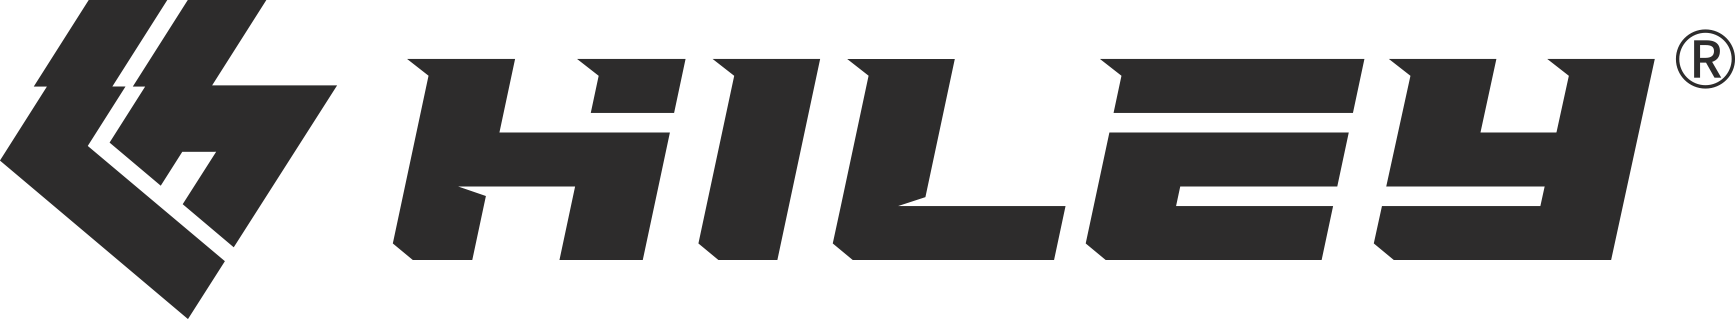 HILEY-logo